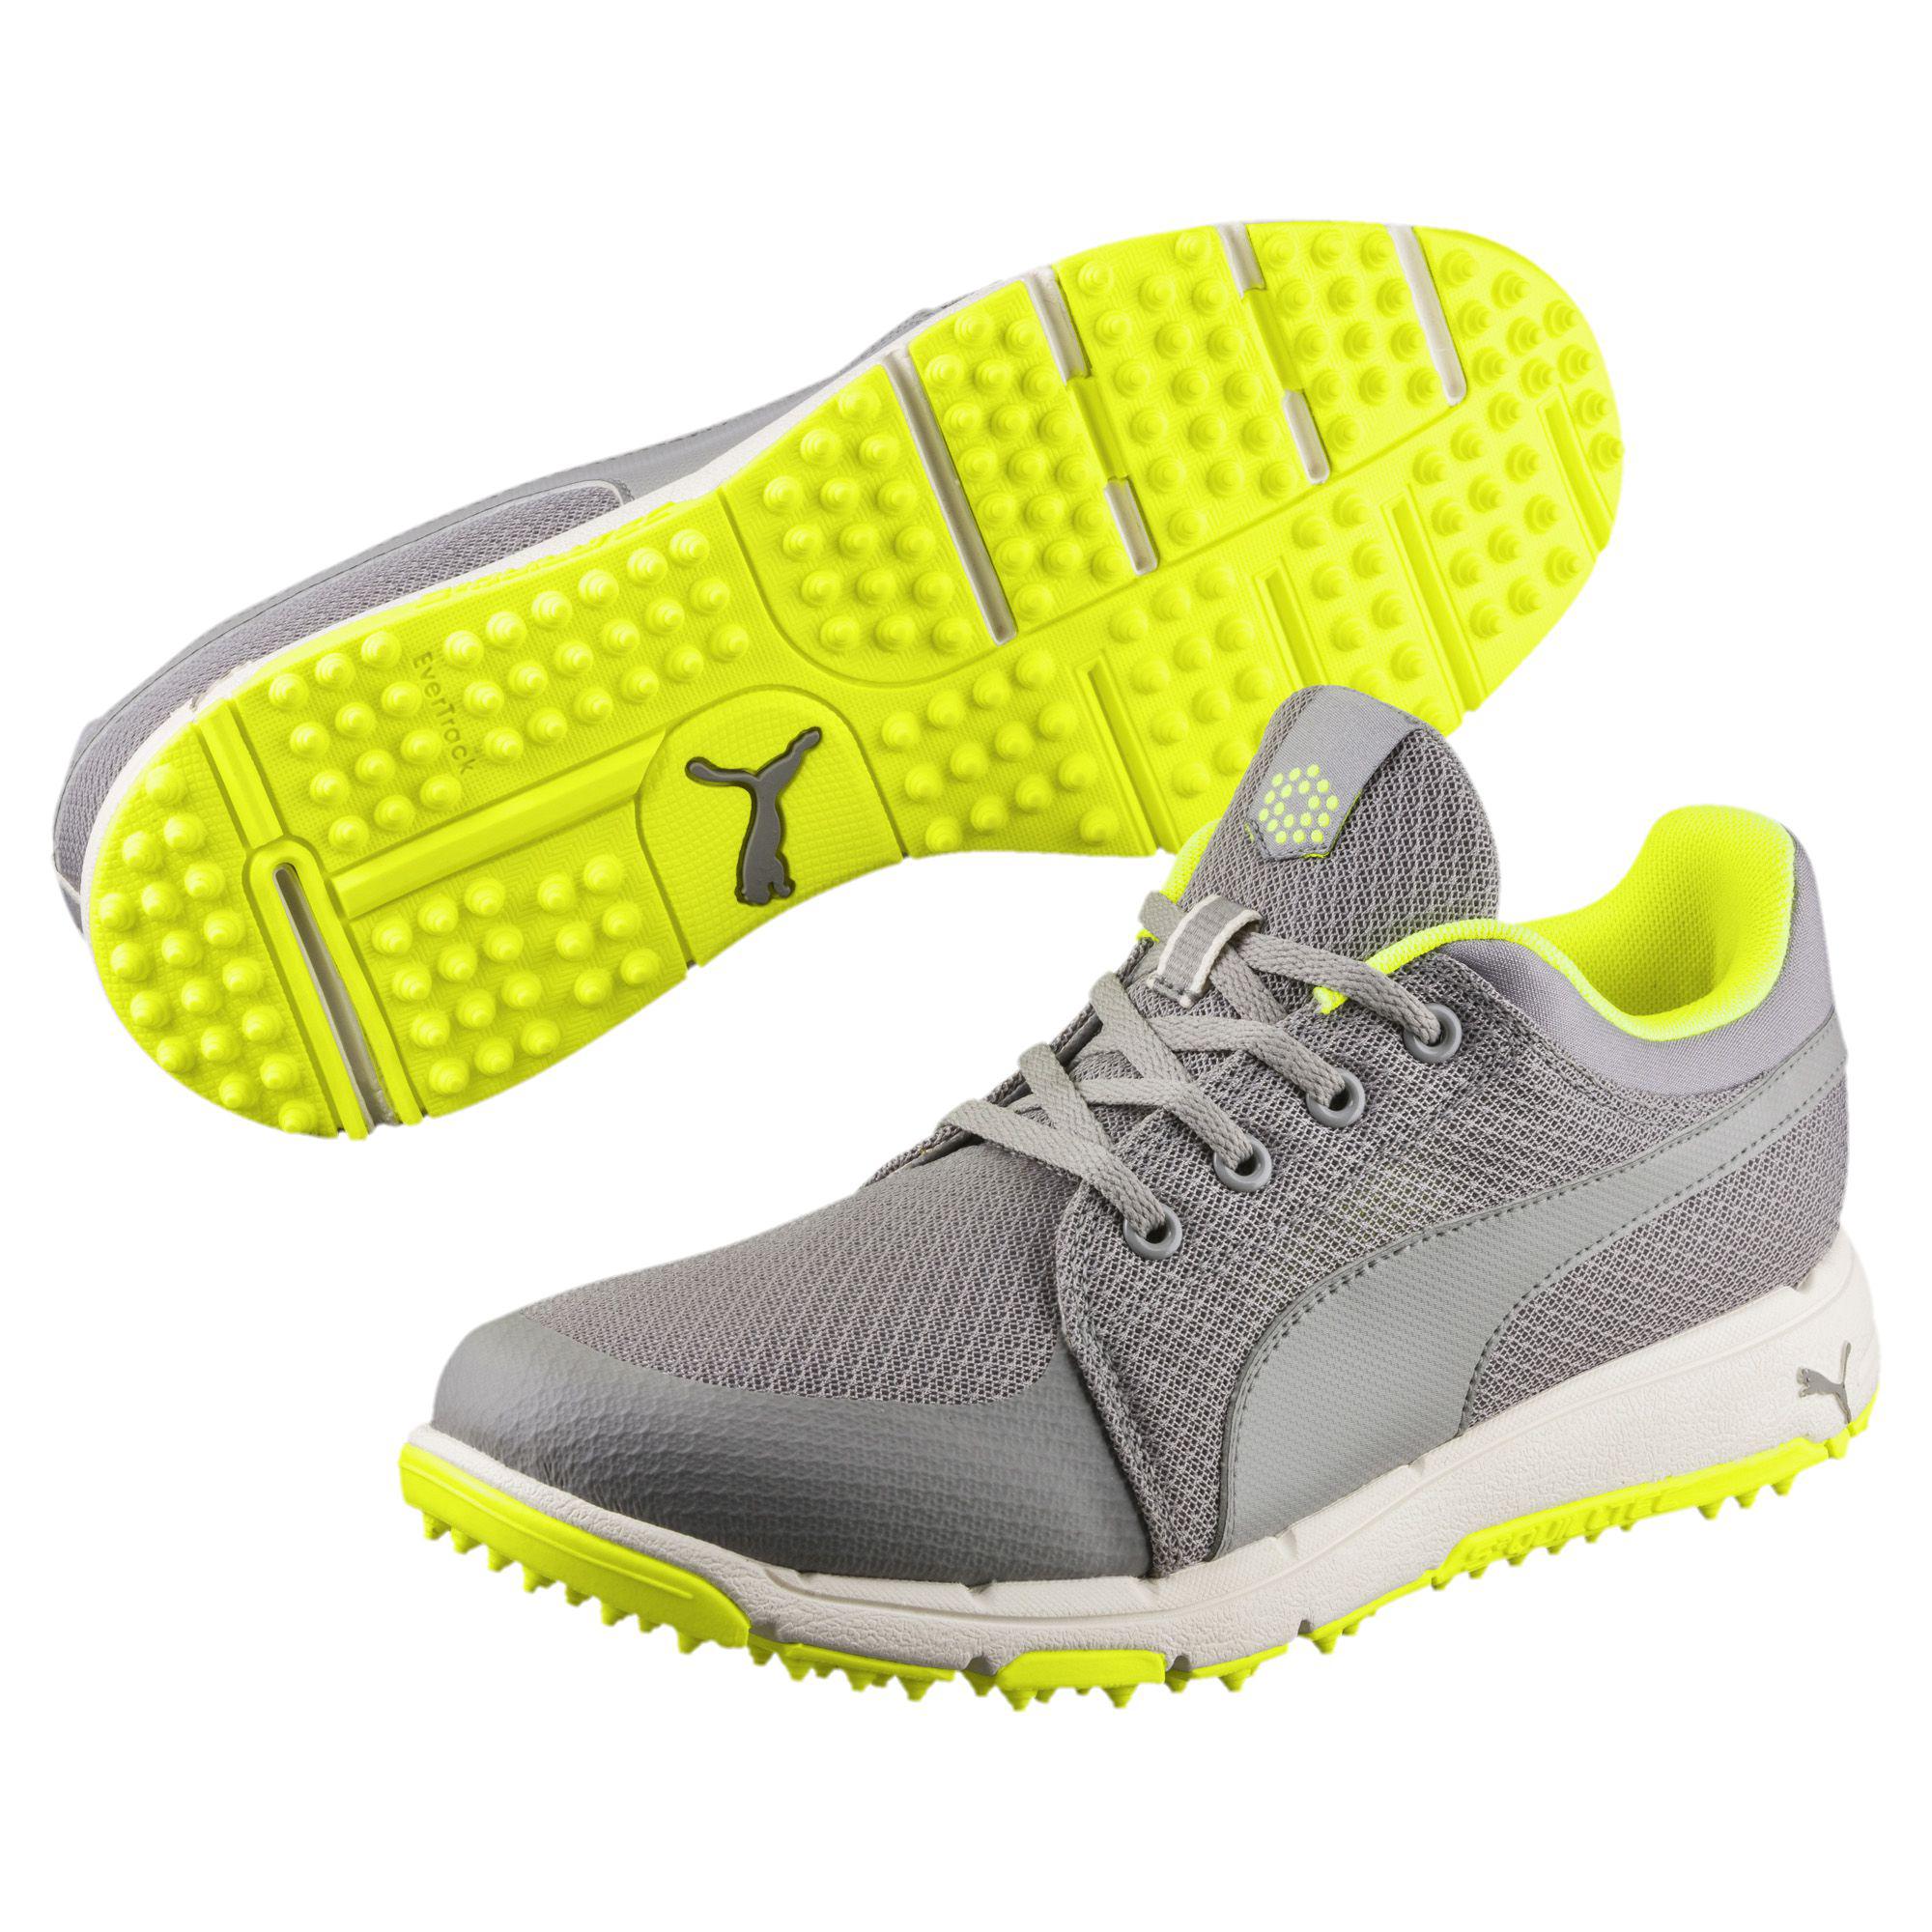 puma men's grip sport tech golf shoes